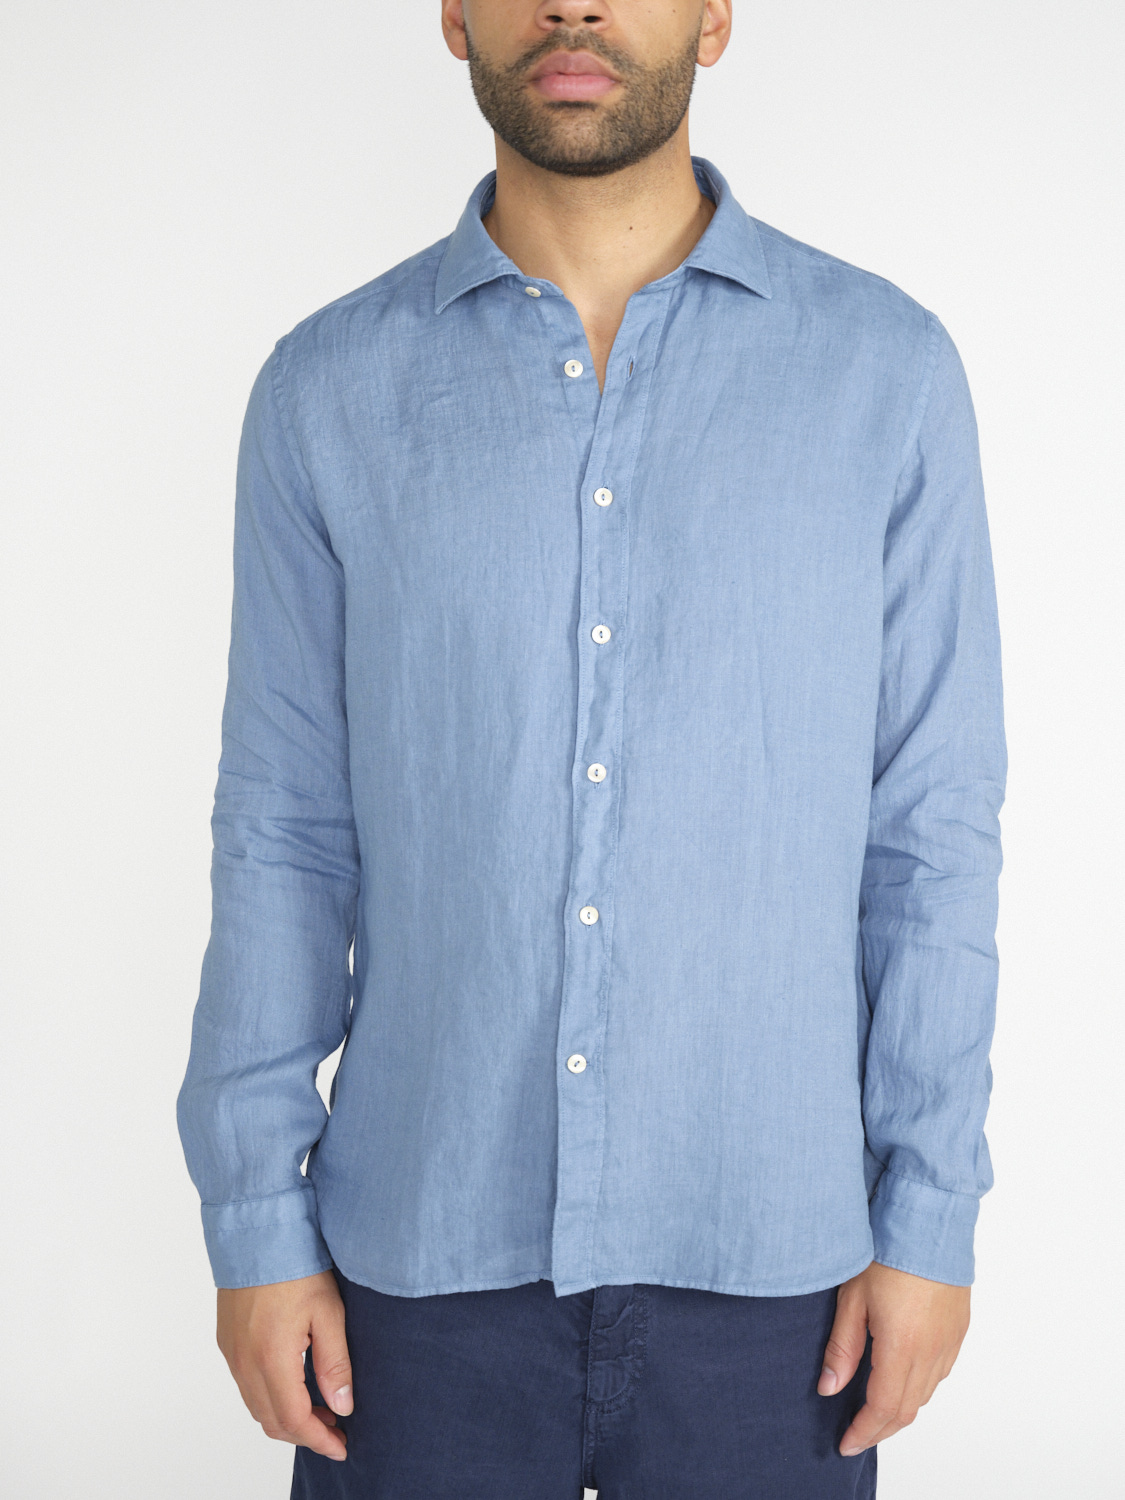 Tintoria Mattei 954 Linen shirt  blue M